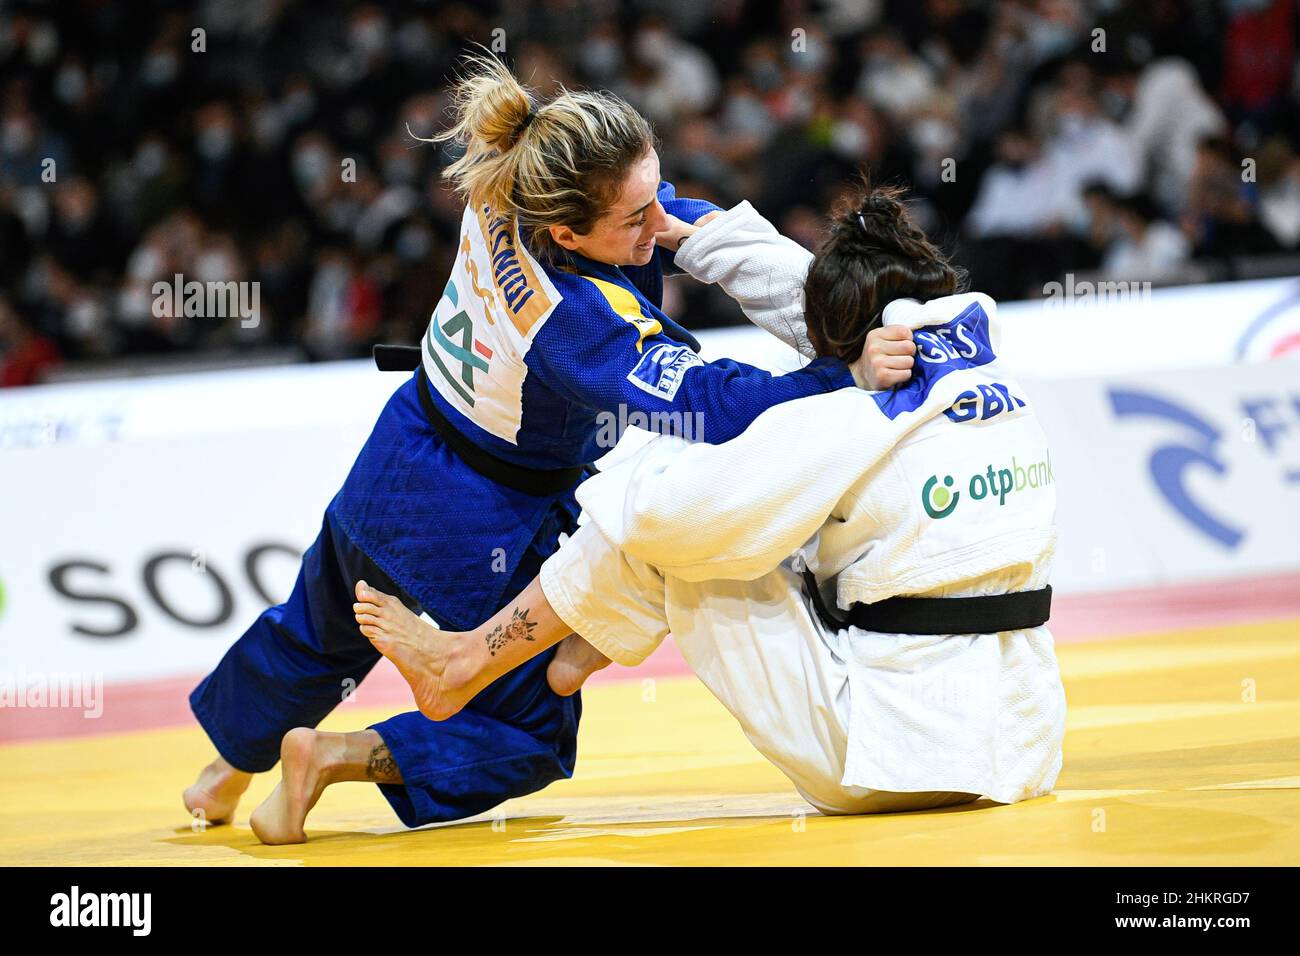 -52 kg de femmes, Distria Krasniqi du Kosovo participe à la tournée mondiale du judo de Paris Grand Chelem 2022, IJF le 5 février 2022 à l'Accor Arena de Paris, France - photo Victor Joly / DPPI Banque D'Images